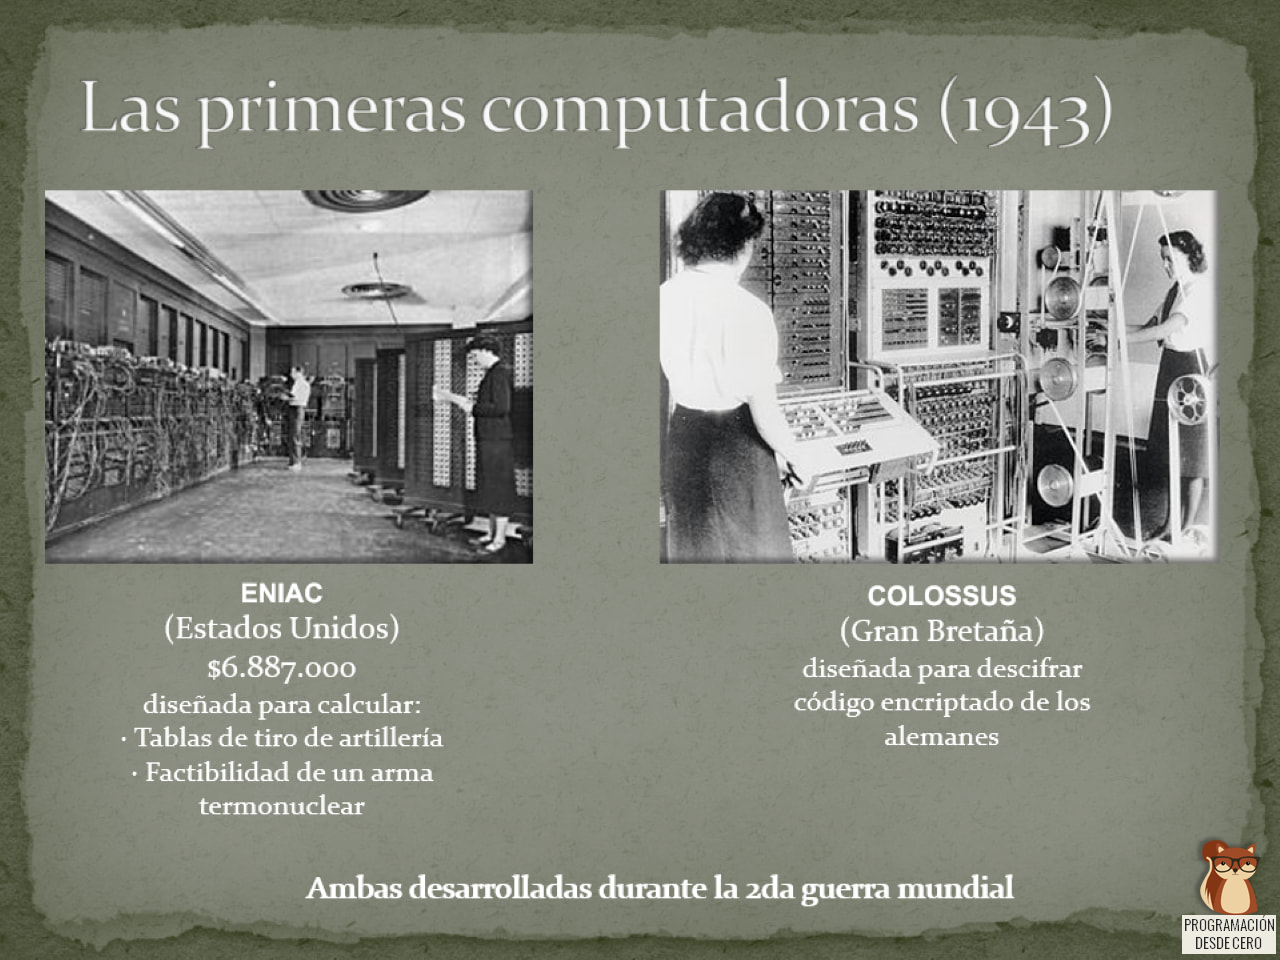 Eniac y Colossus, dos de las primeras computadoras